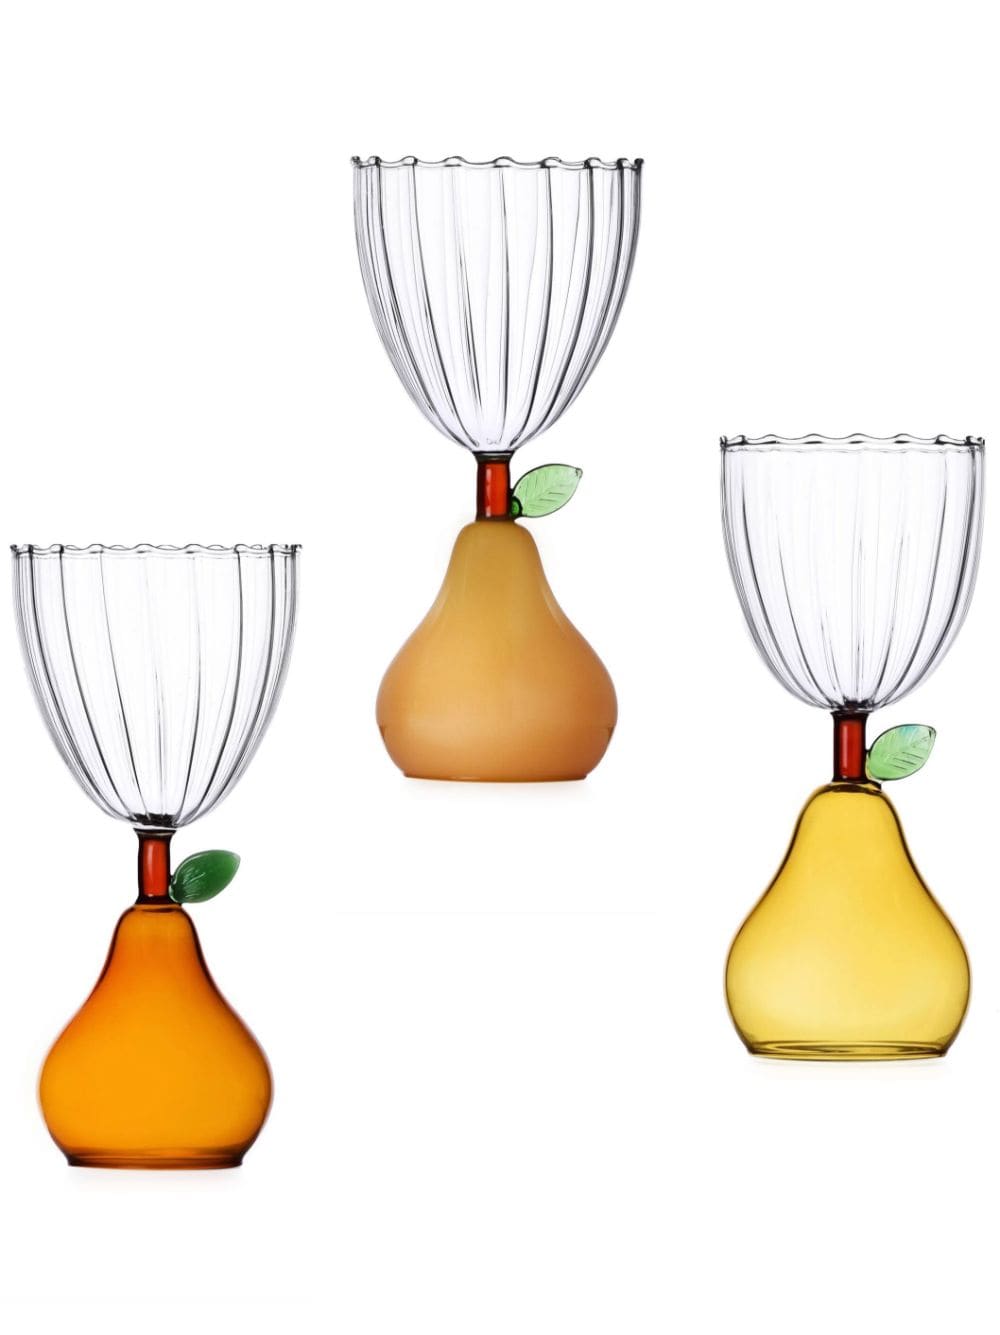 Ichendorf Milano pear-shaped wine goblets (set of 3) - Neutrals von Ichendorf Milano